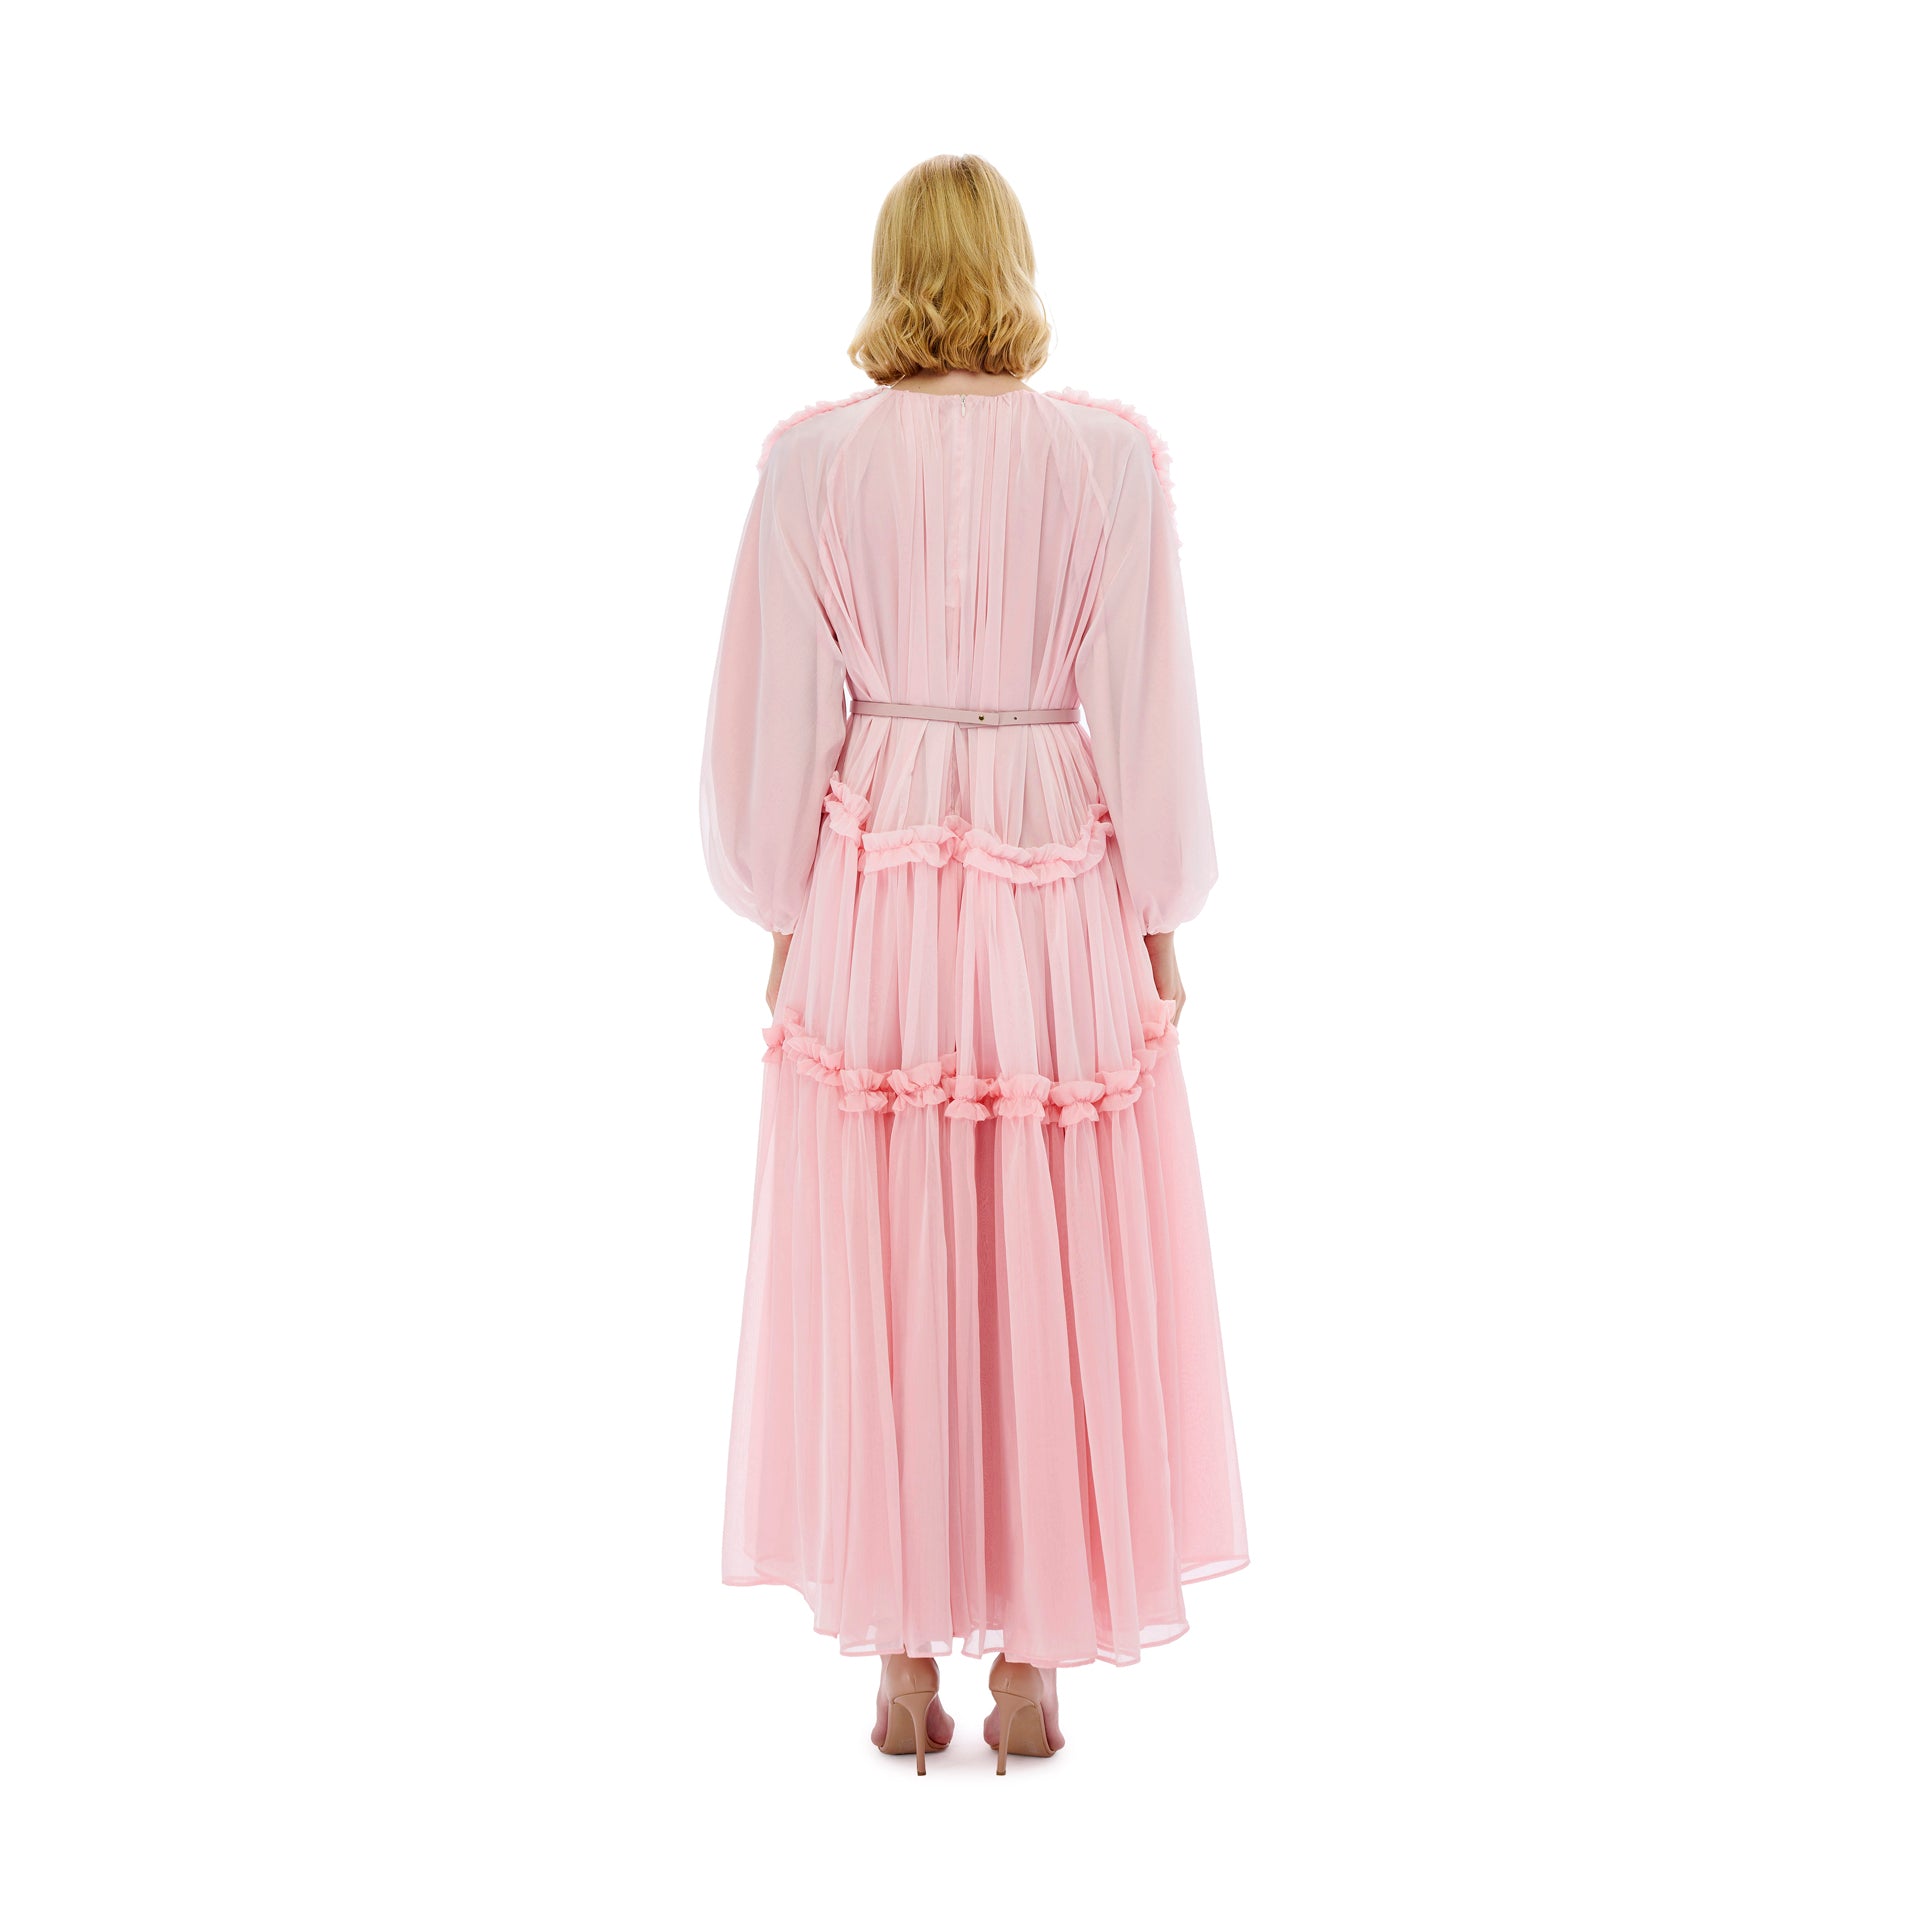 Pink Chiffon Flowy Dress From Miha